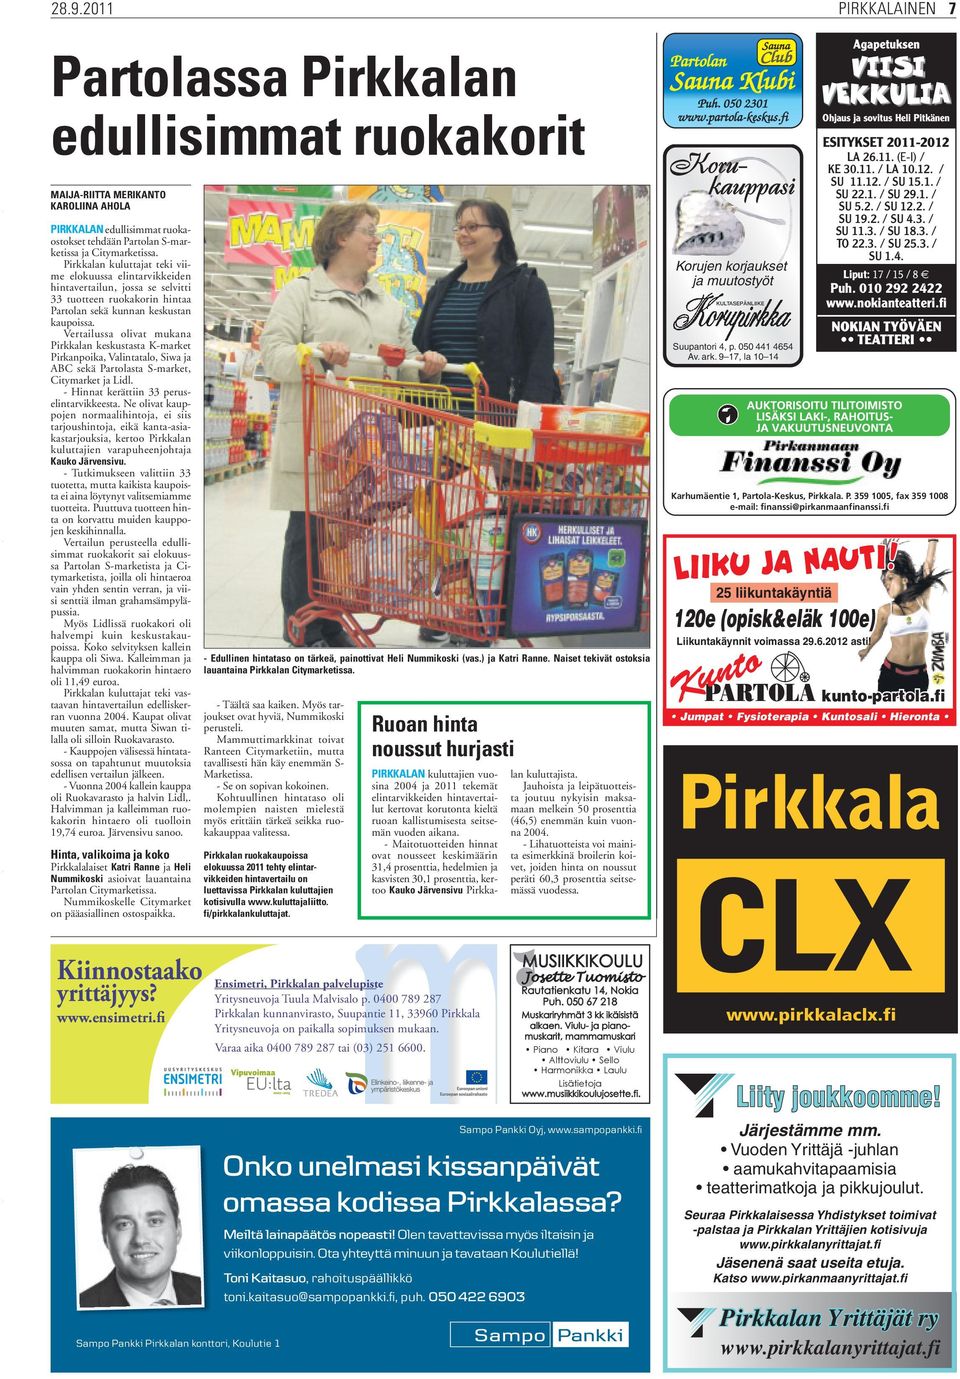 Vertailussa olivat mukana Pirkkalan keskustasta K-market Pirkanpoika, Valintatalo, Siwa ja ABC sekä Partolasta S-market, Citymarket ja Lidl. - Hinnat kerättiin 33 peruselintarvikkeesta.